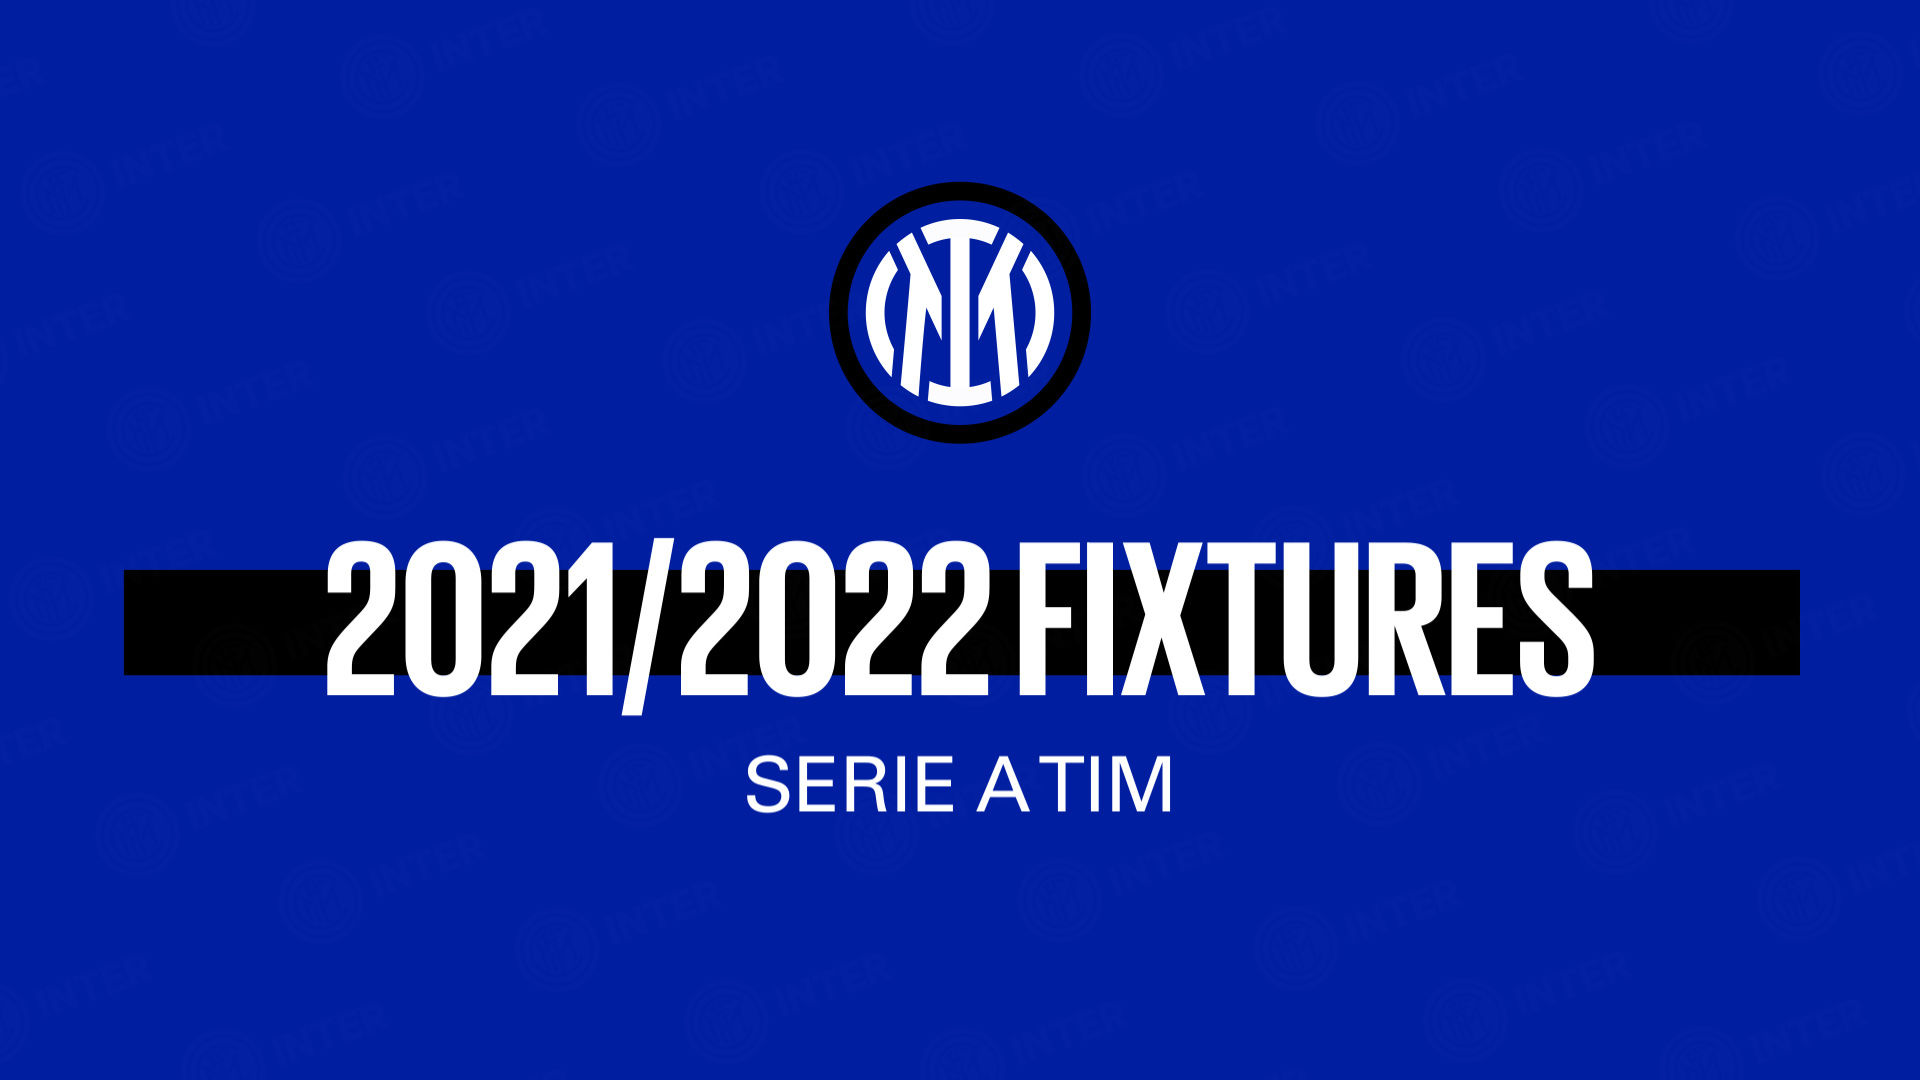 Inter Calendar 2020 21 Inter Fixture List In Full Inter Official Site